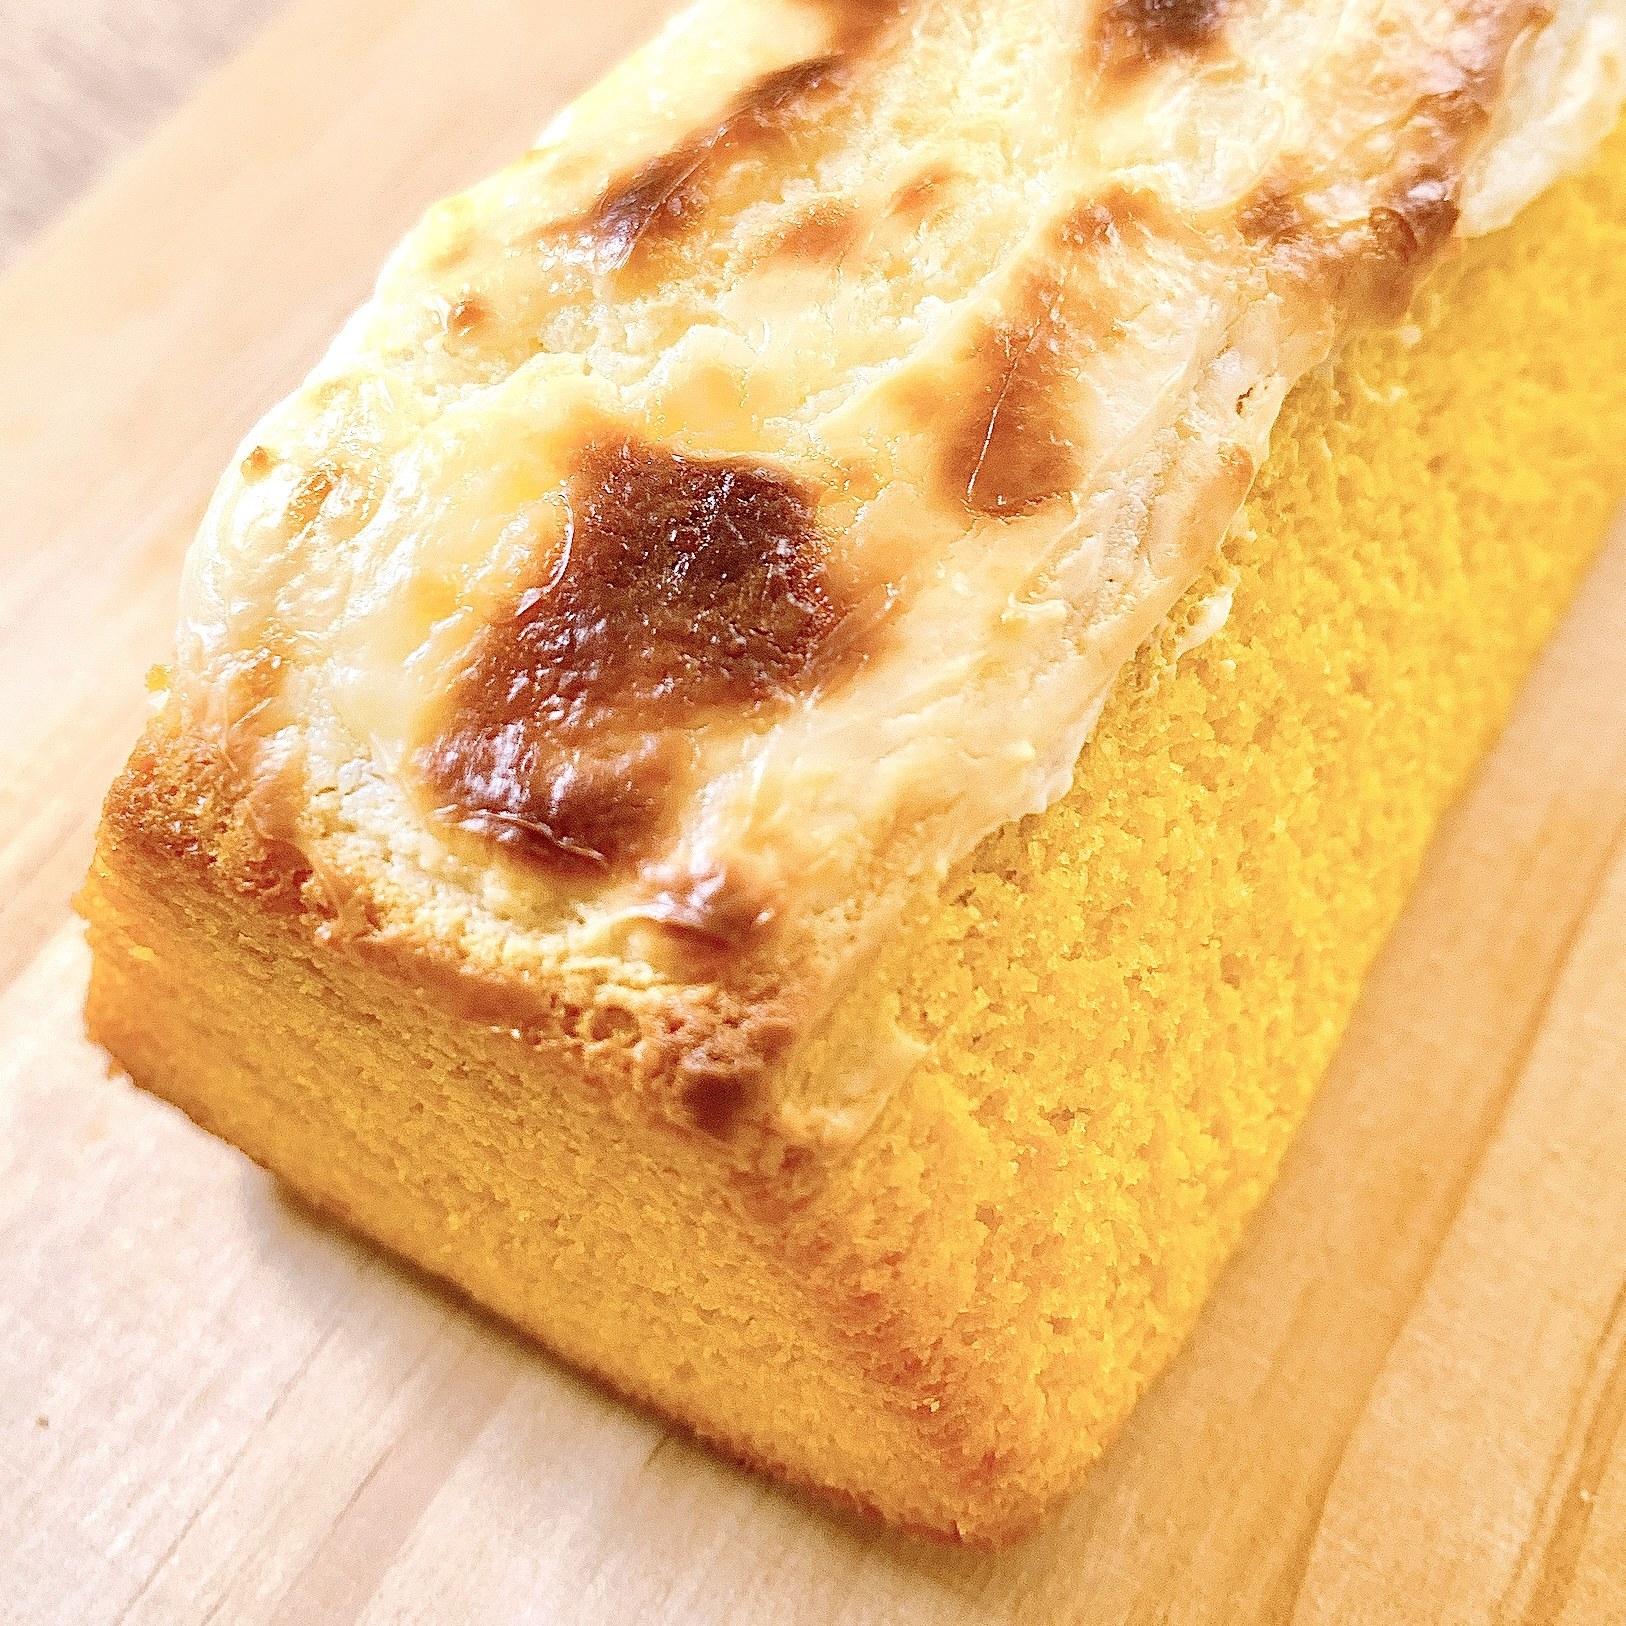 無印良品のオススメのアレンジレシピ「かぼちゃのバウムクリームチーズトースト」